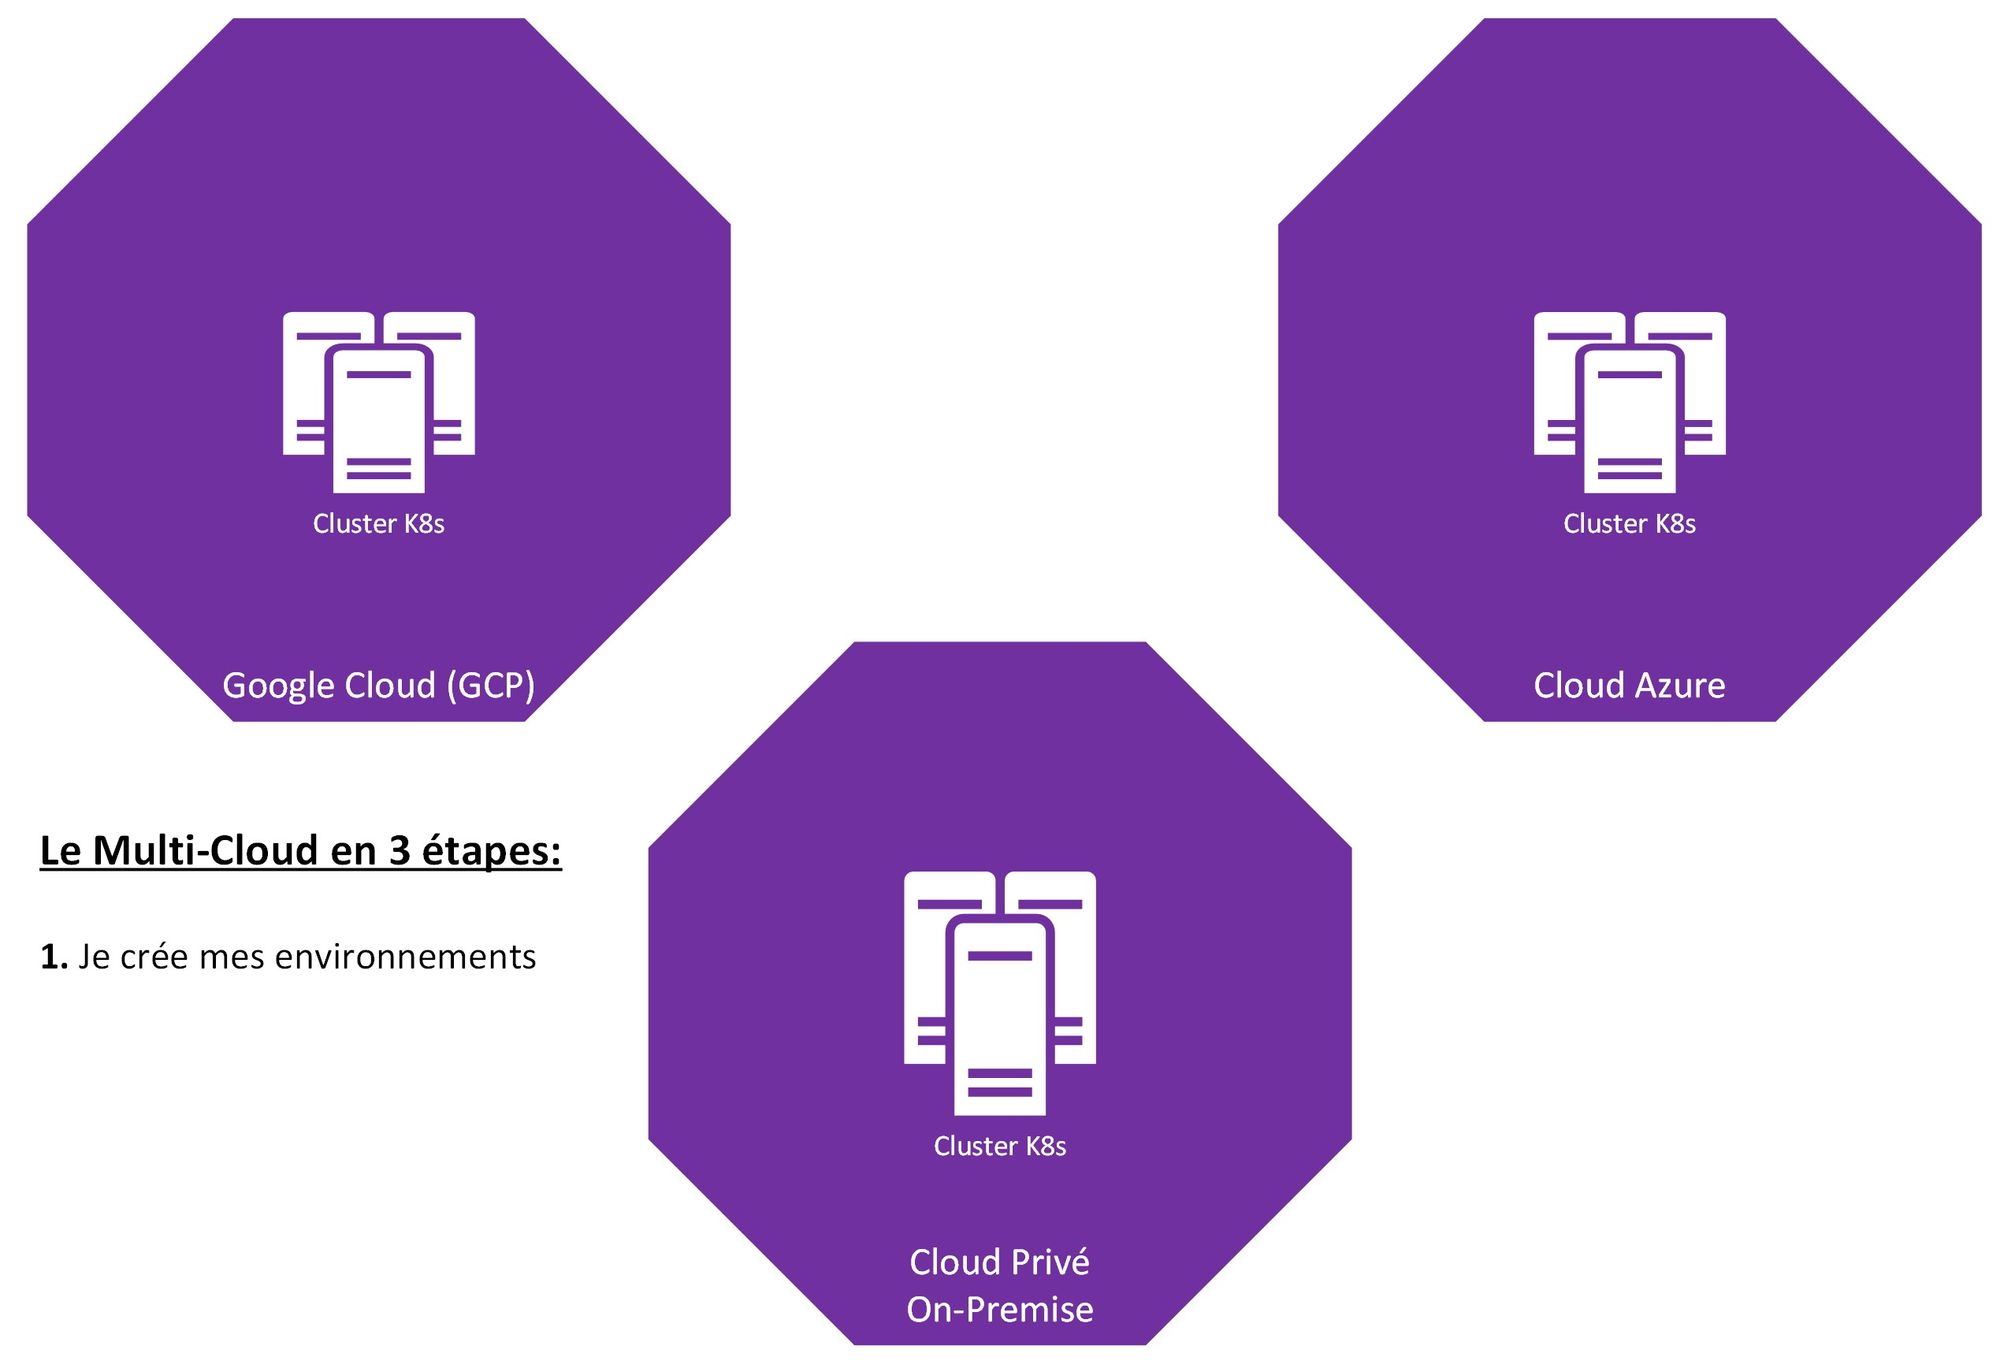 Le Multi-Cloud en 3 étapes